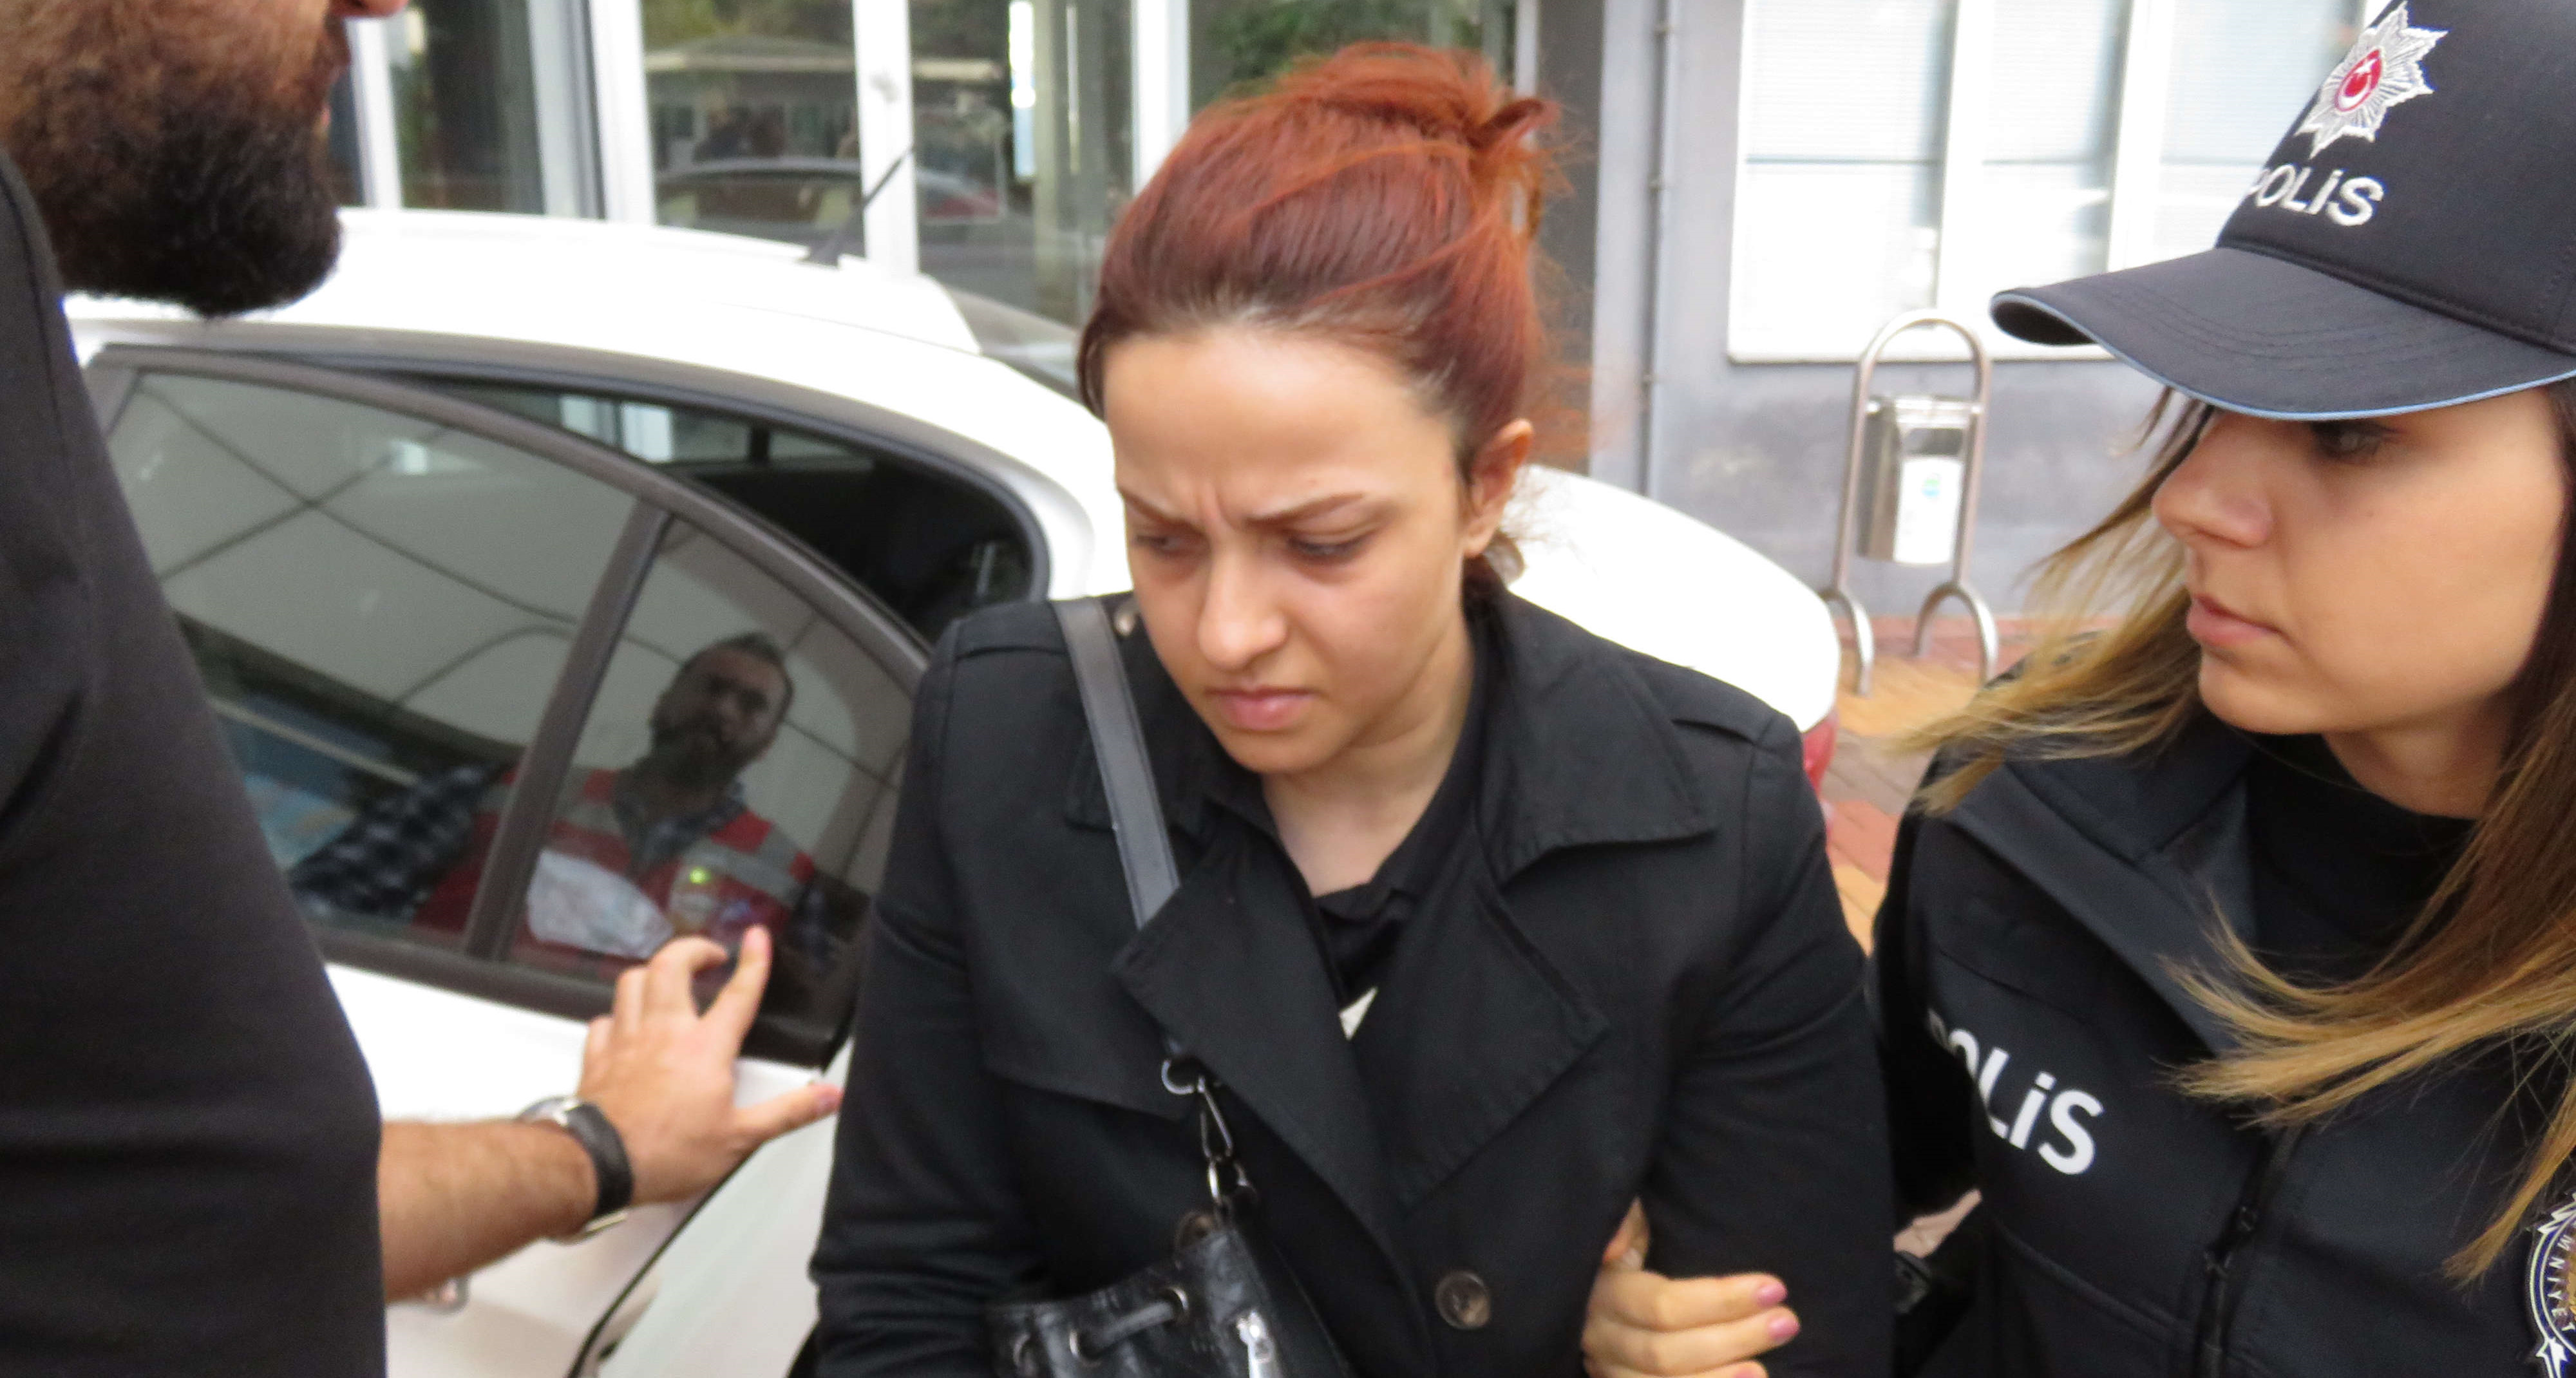 FETÖ/PDY terör örgütü elebaşı Gülen'in yeğeni gözaltına alındı